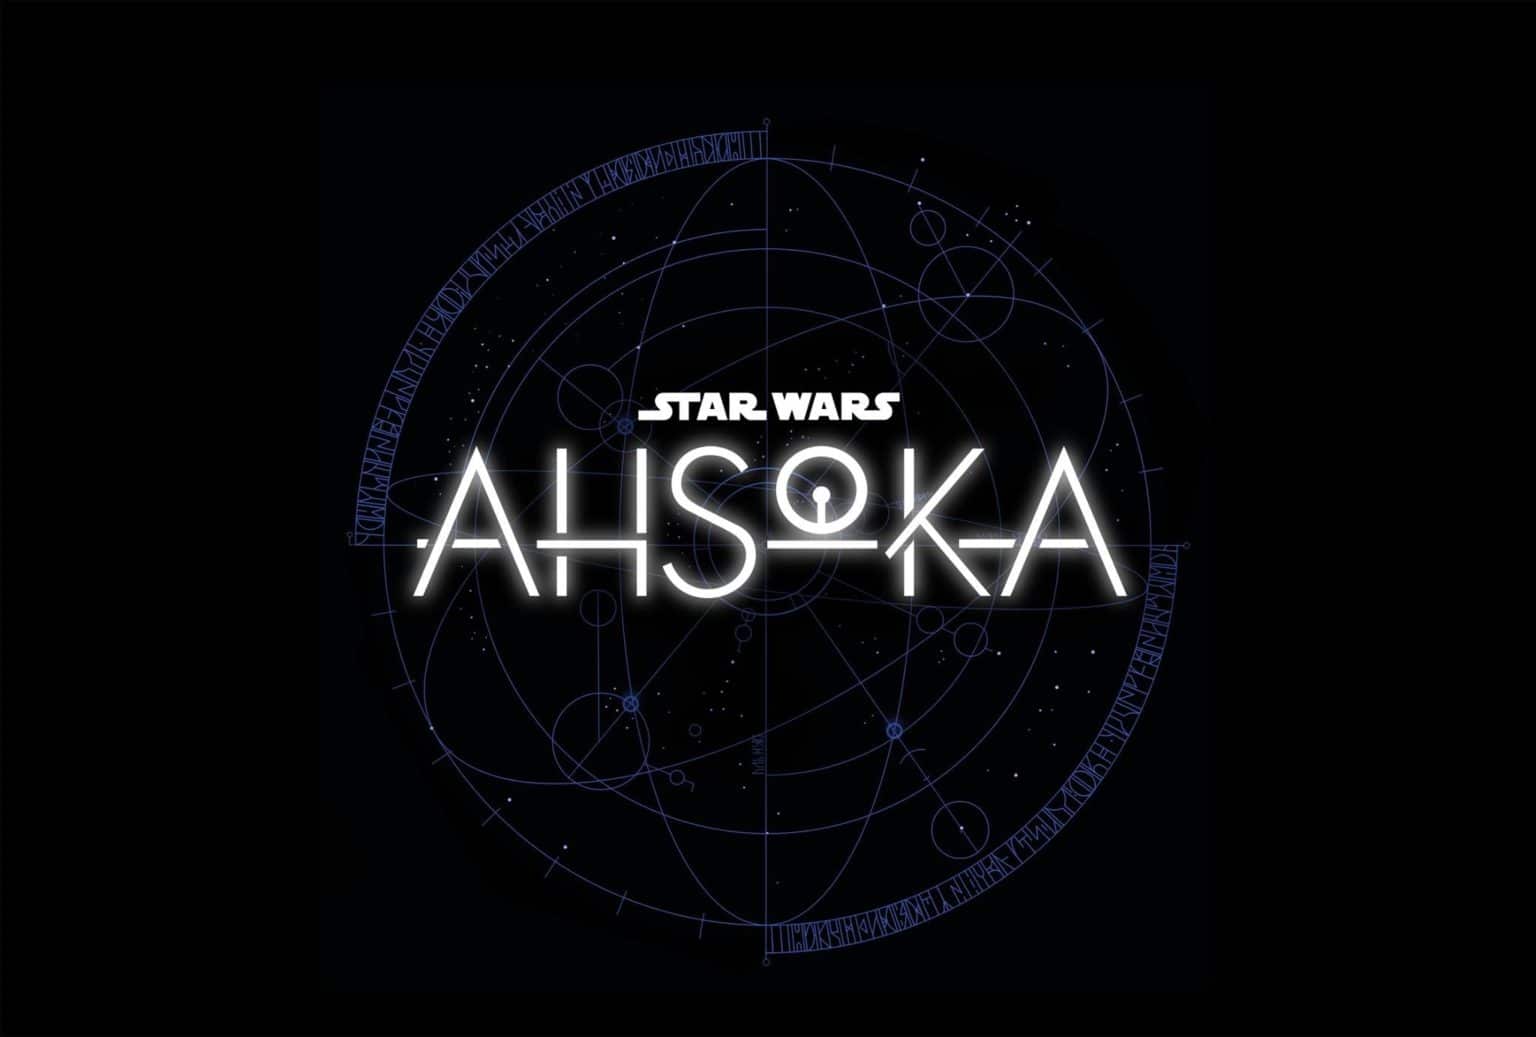 ashoka-star-wars